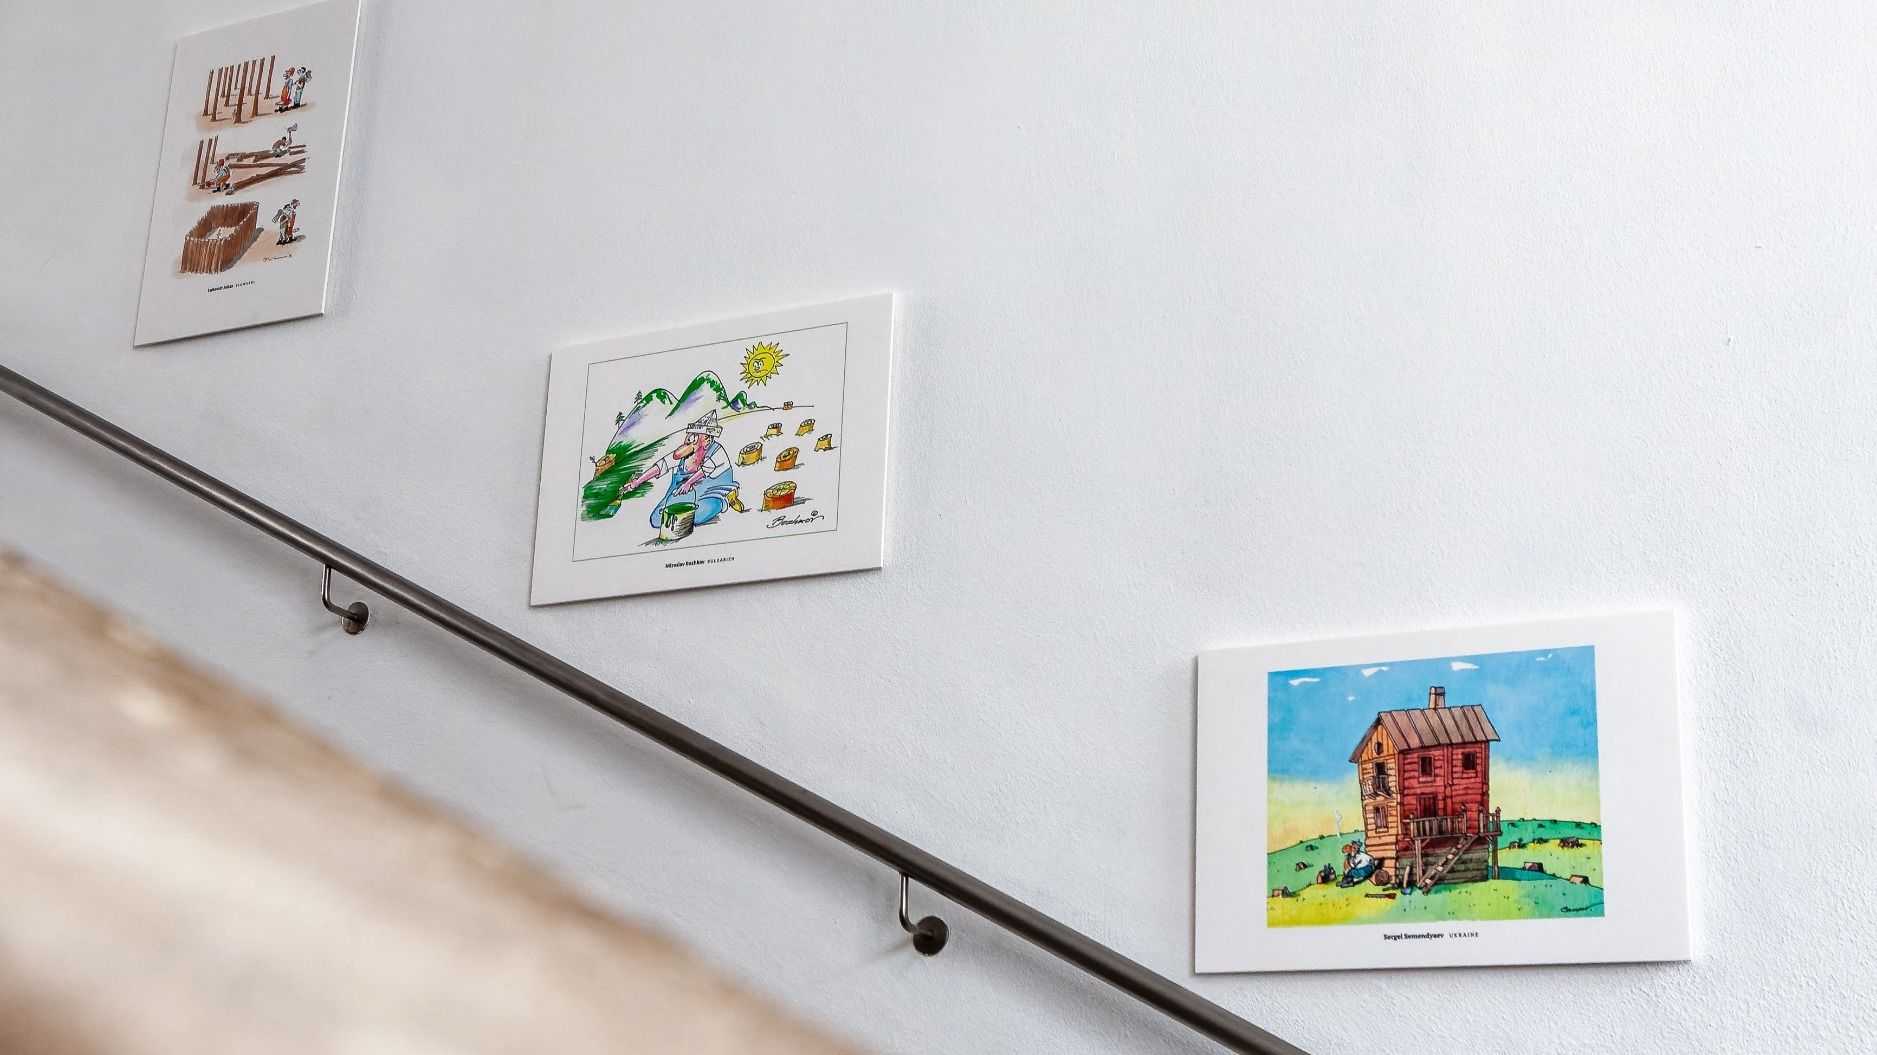 Da kommt man nicht dran vorbei: Die Karikaturen werden im Treppenhaus des Vonderau Museums präsentiert. Foto: Bistum Fulda / Burkhard Beintken